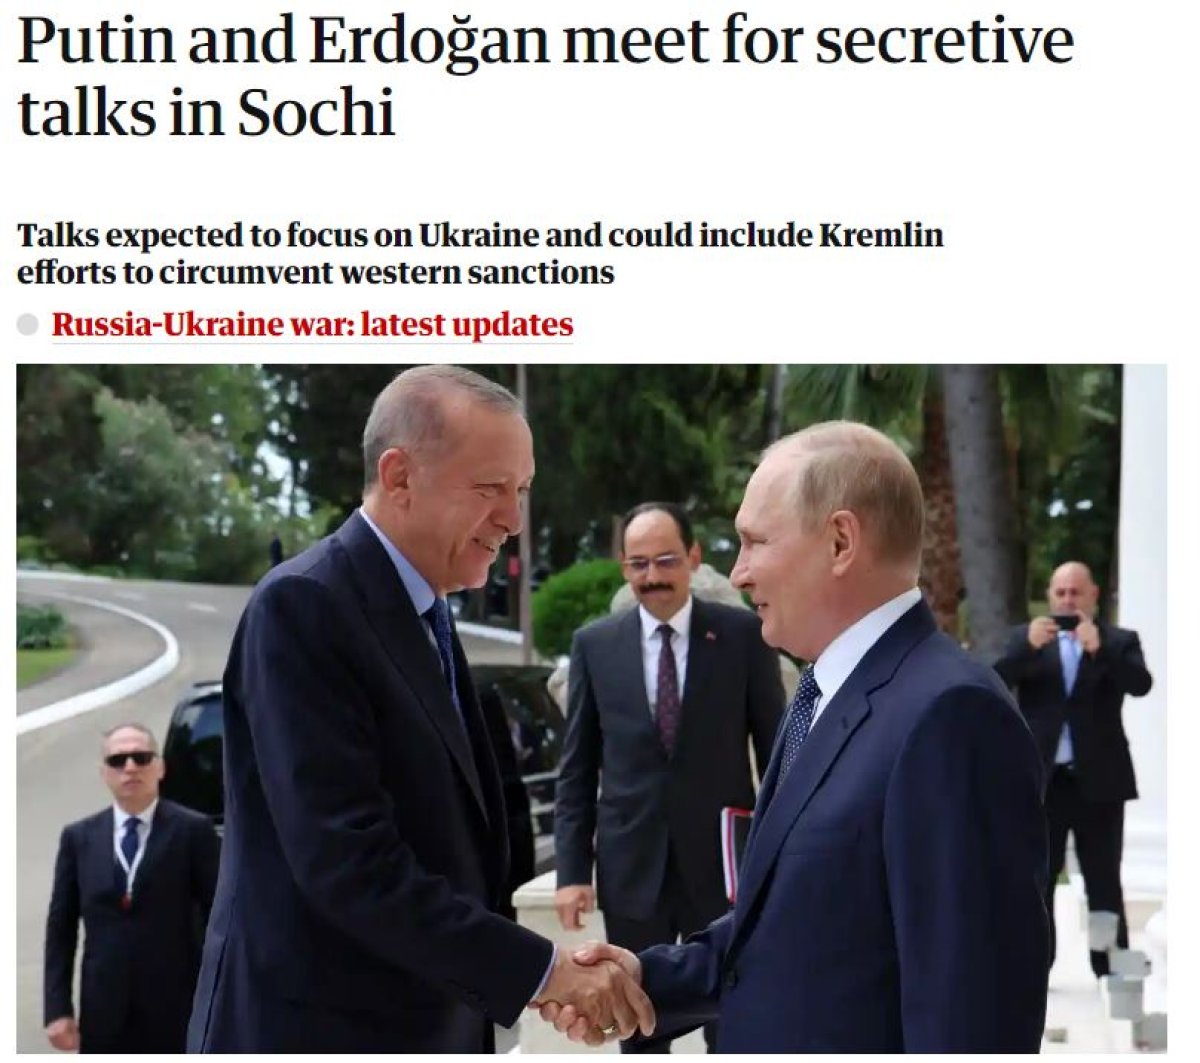 Cumhurbaşkanı Erdoğan ile Putin in Soçi deki görüşmesi dünya basınında #1